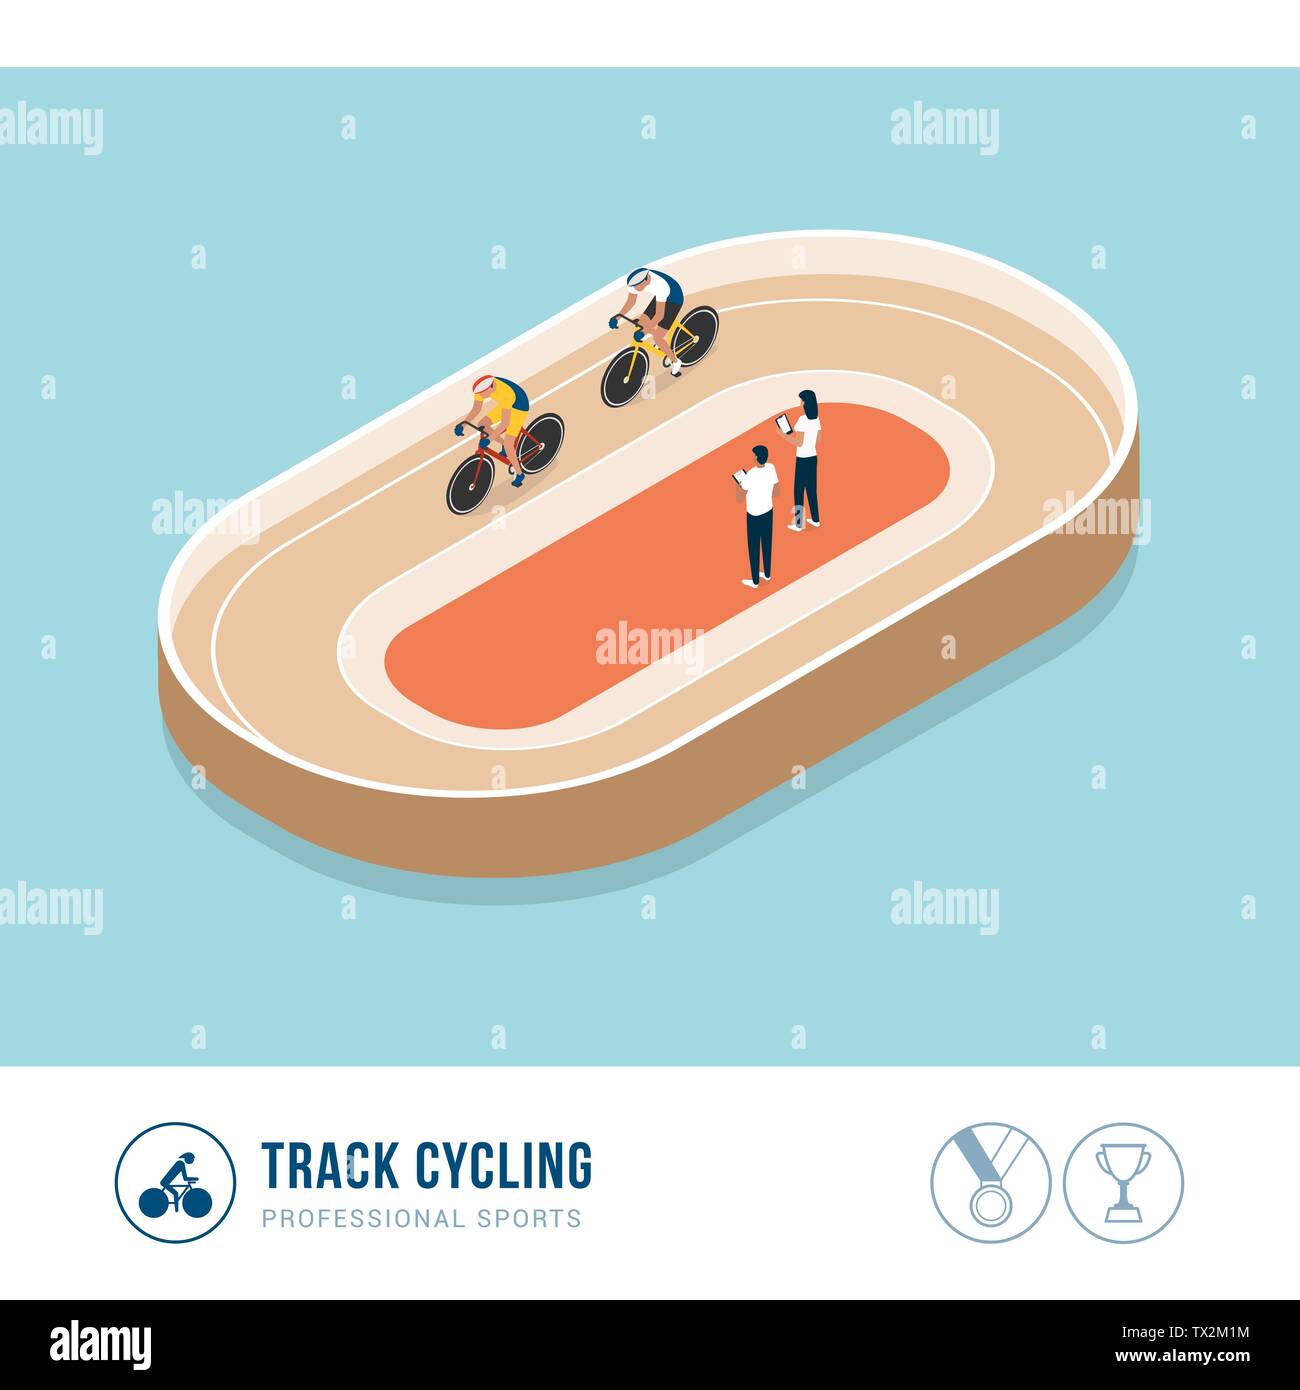 Professionelle Sport Wettbewerb: track Radfahren, Radfahrer Fahrrad während eines Rennens Stock Vektor